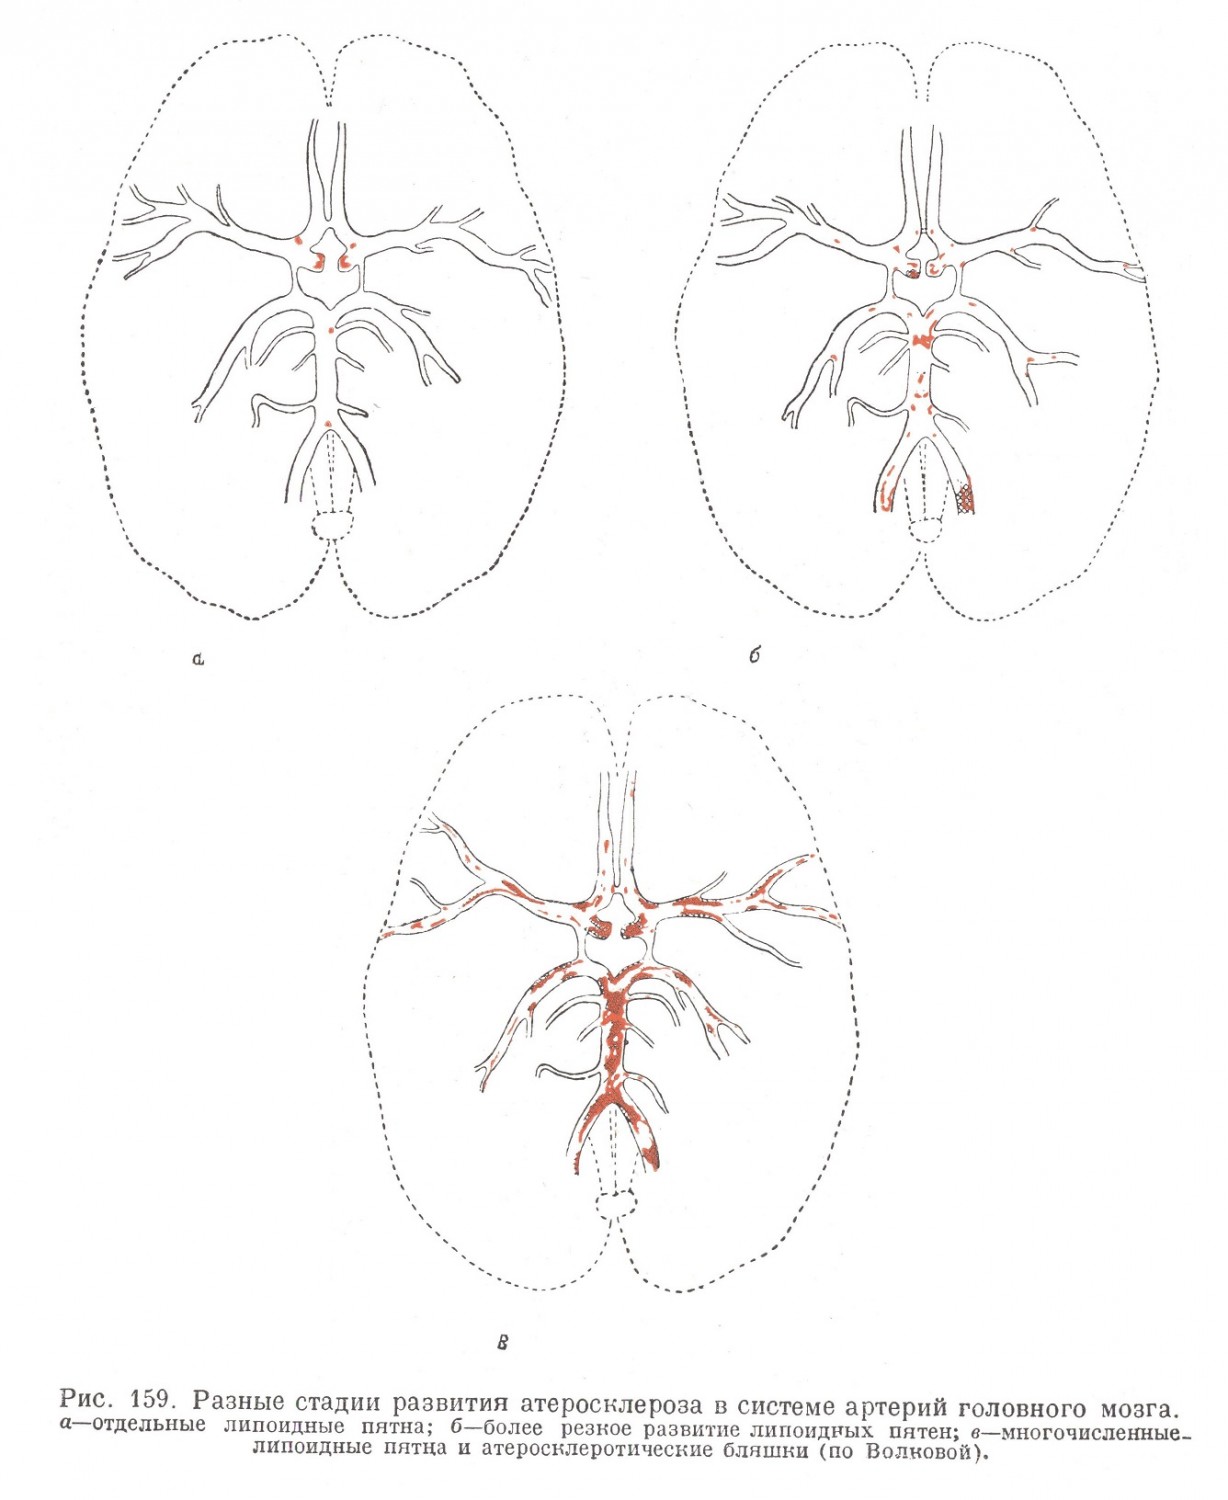 Разные стадии развития атеросклероза в системе артерий головного мозга